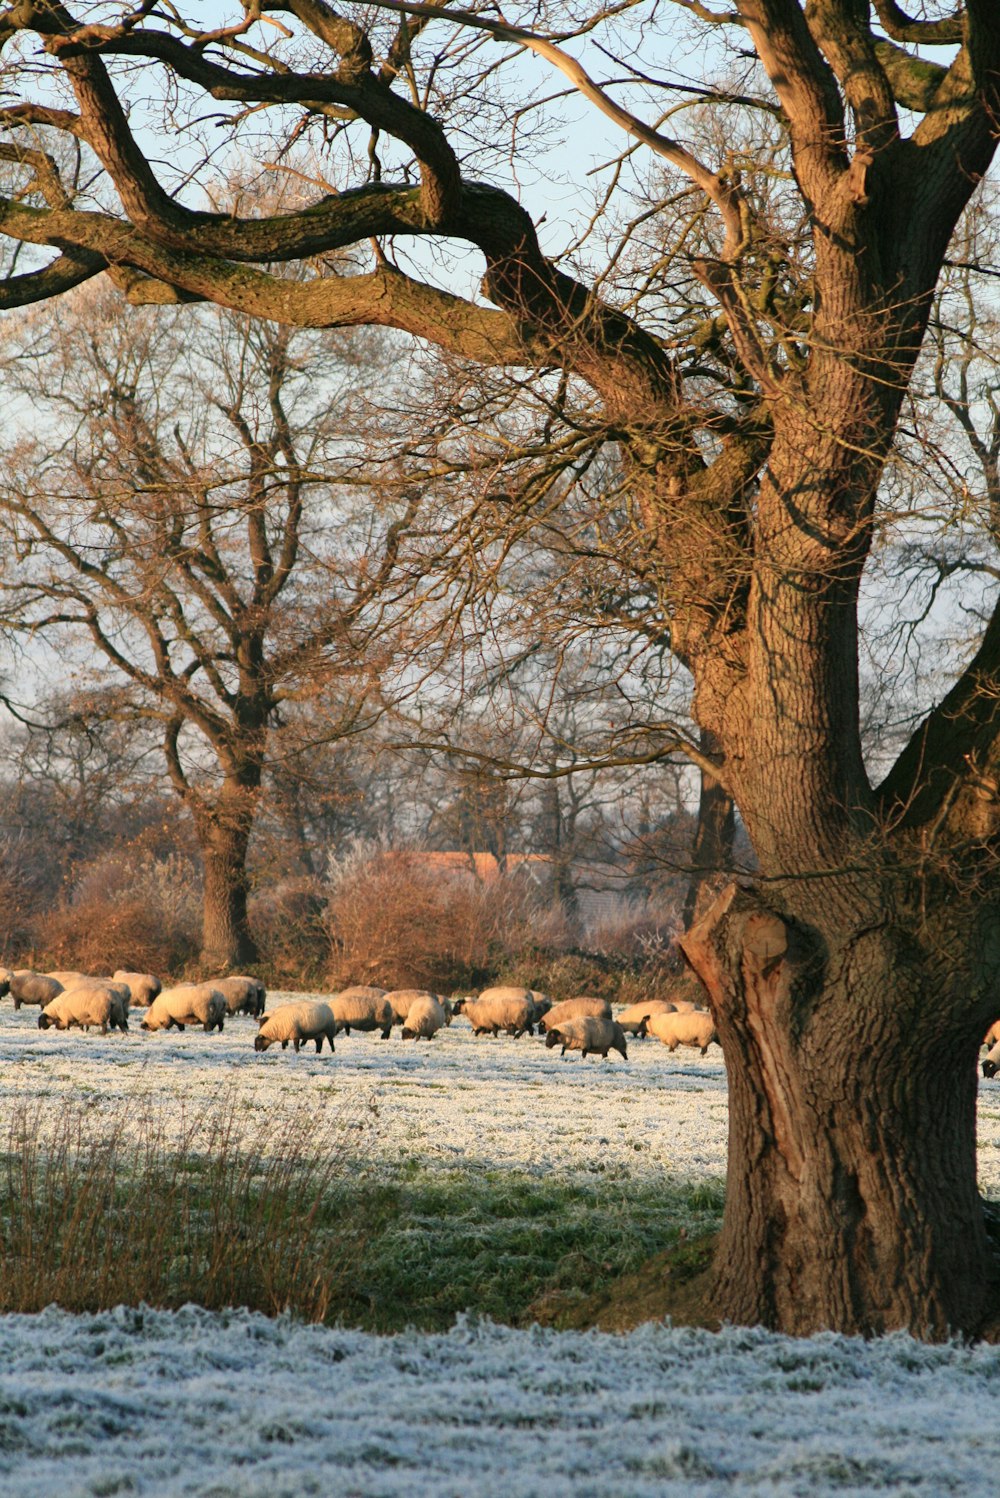 Un rebaño de ovejas caminando por un campo cubierto de nieve